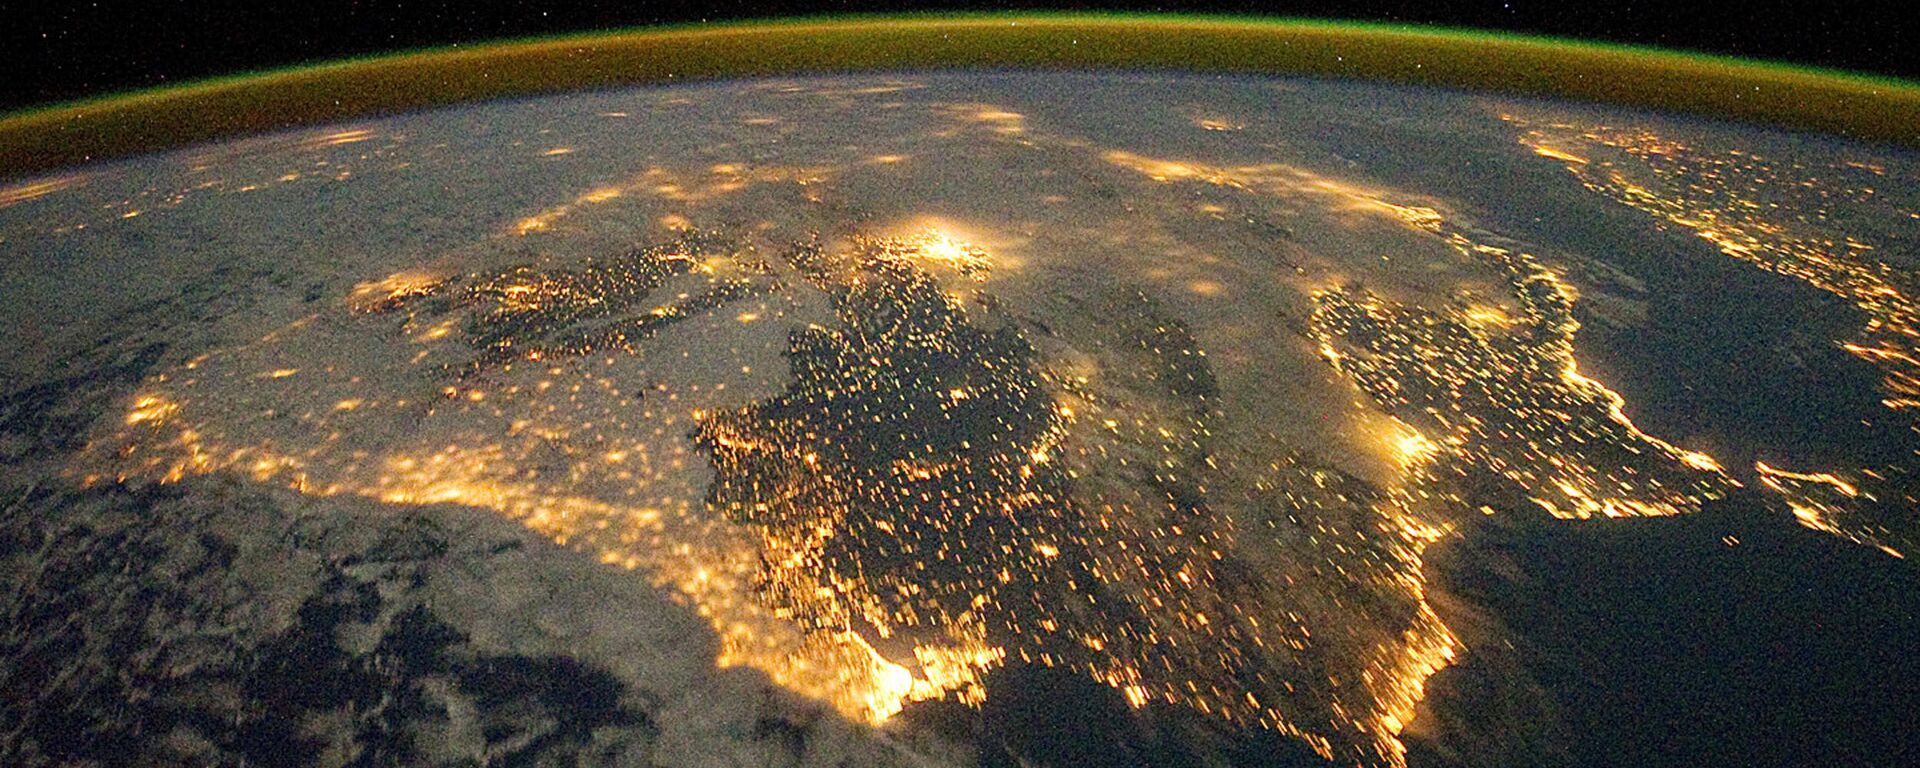 Фотография астронавта, опубликованная Земной обсерваторией НАСА 26 декабря 2011 года - Sputnik Абхазия, 1920, 26.03.2022